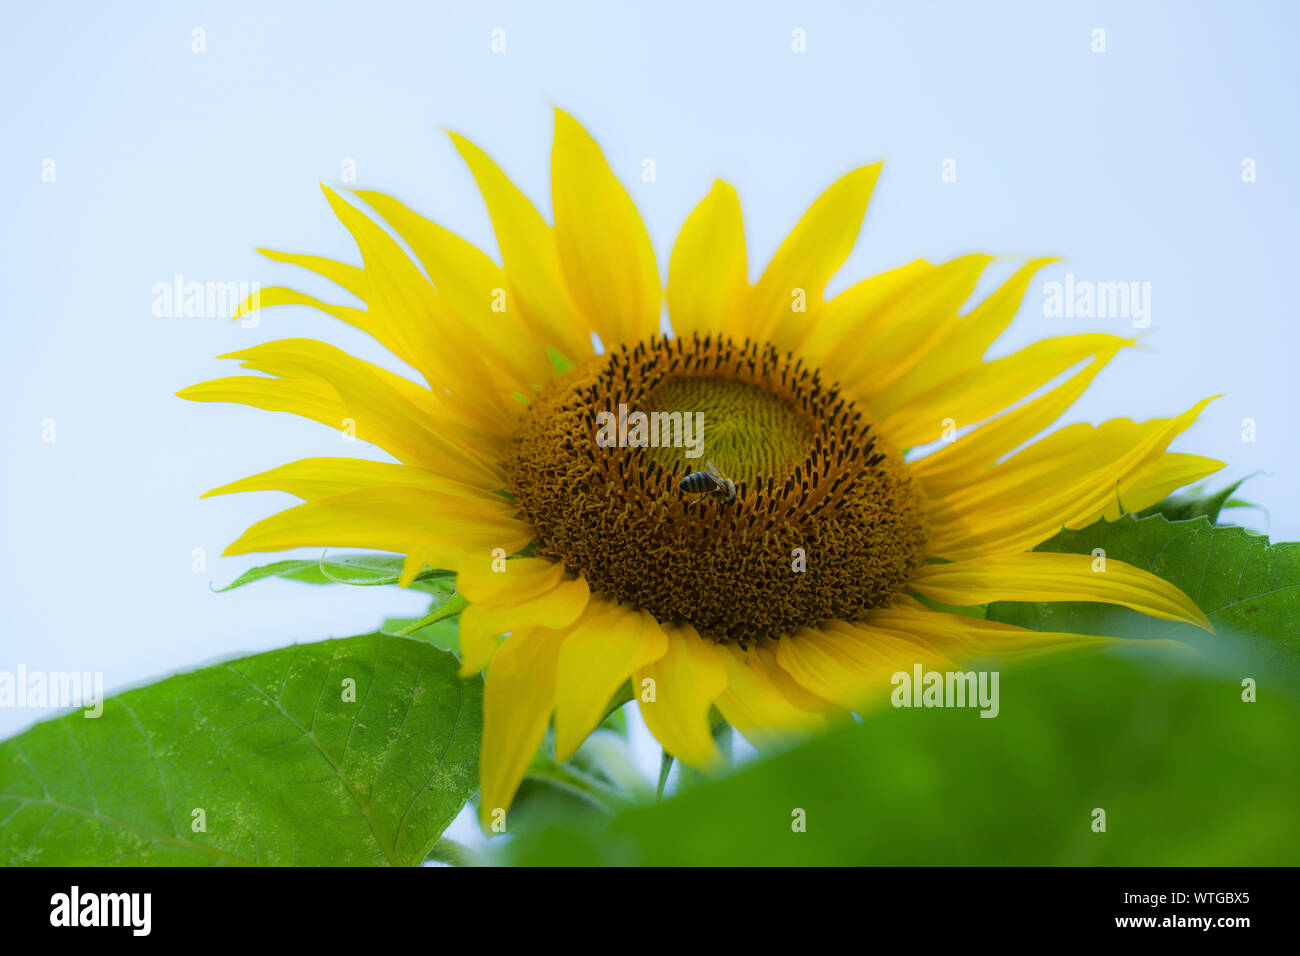 Une abeille sur la tête d'une fleur de tournesol. Fleurs de tournesol jaune avec des feuilles vertes et fond blanc. Banque D'Images